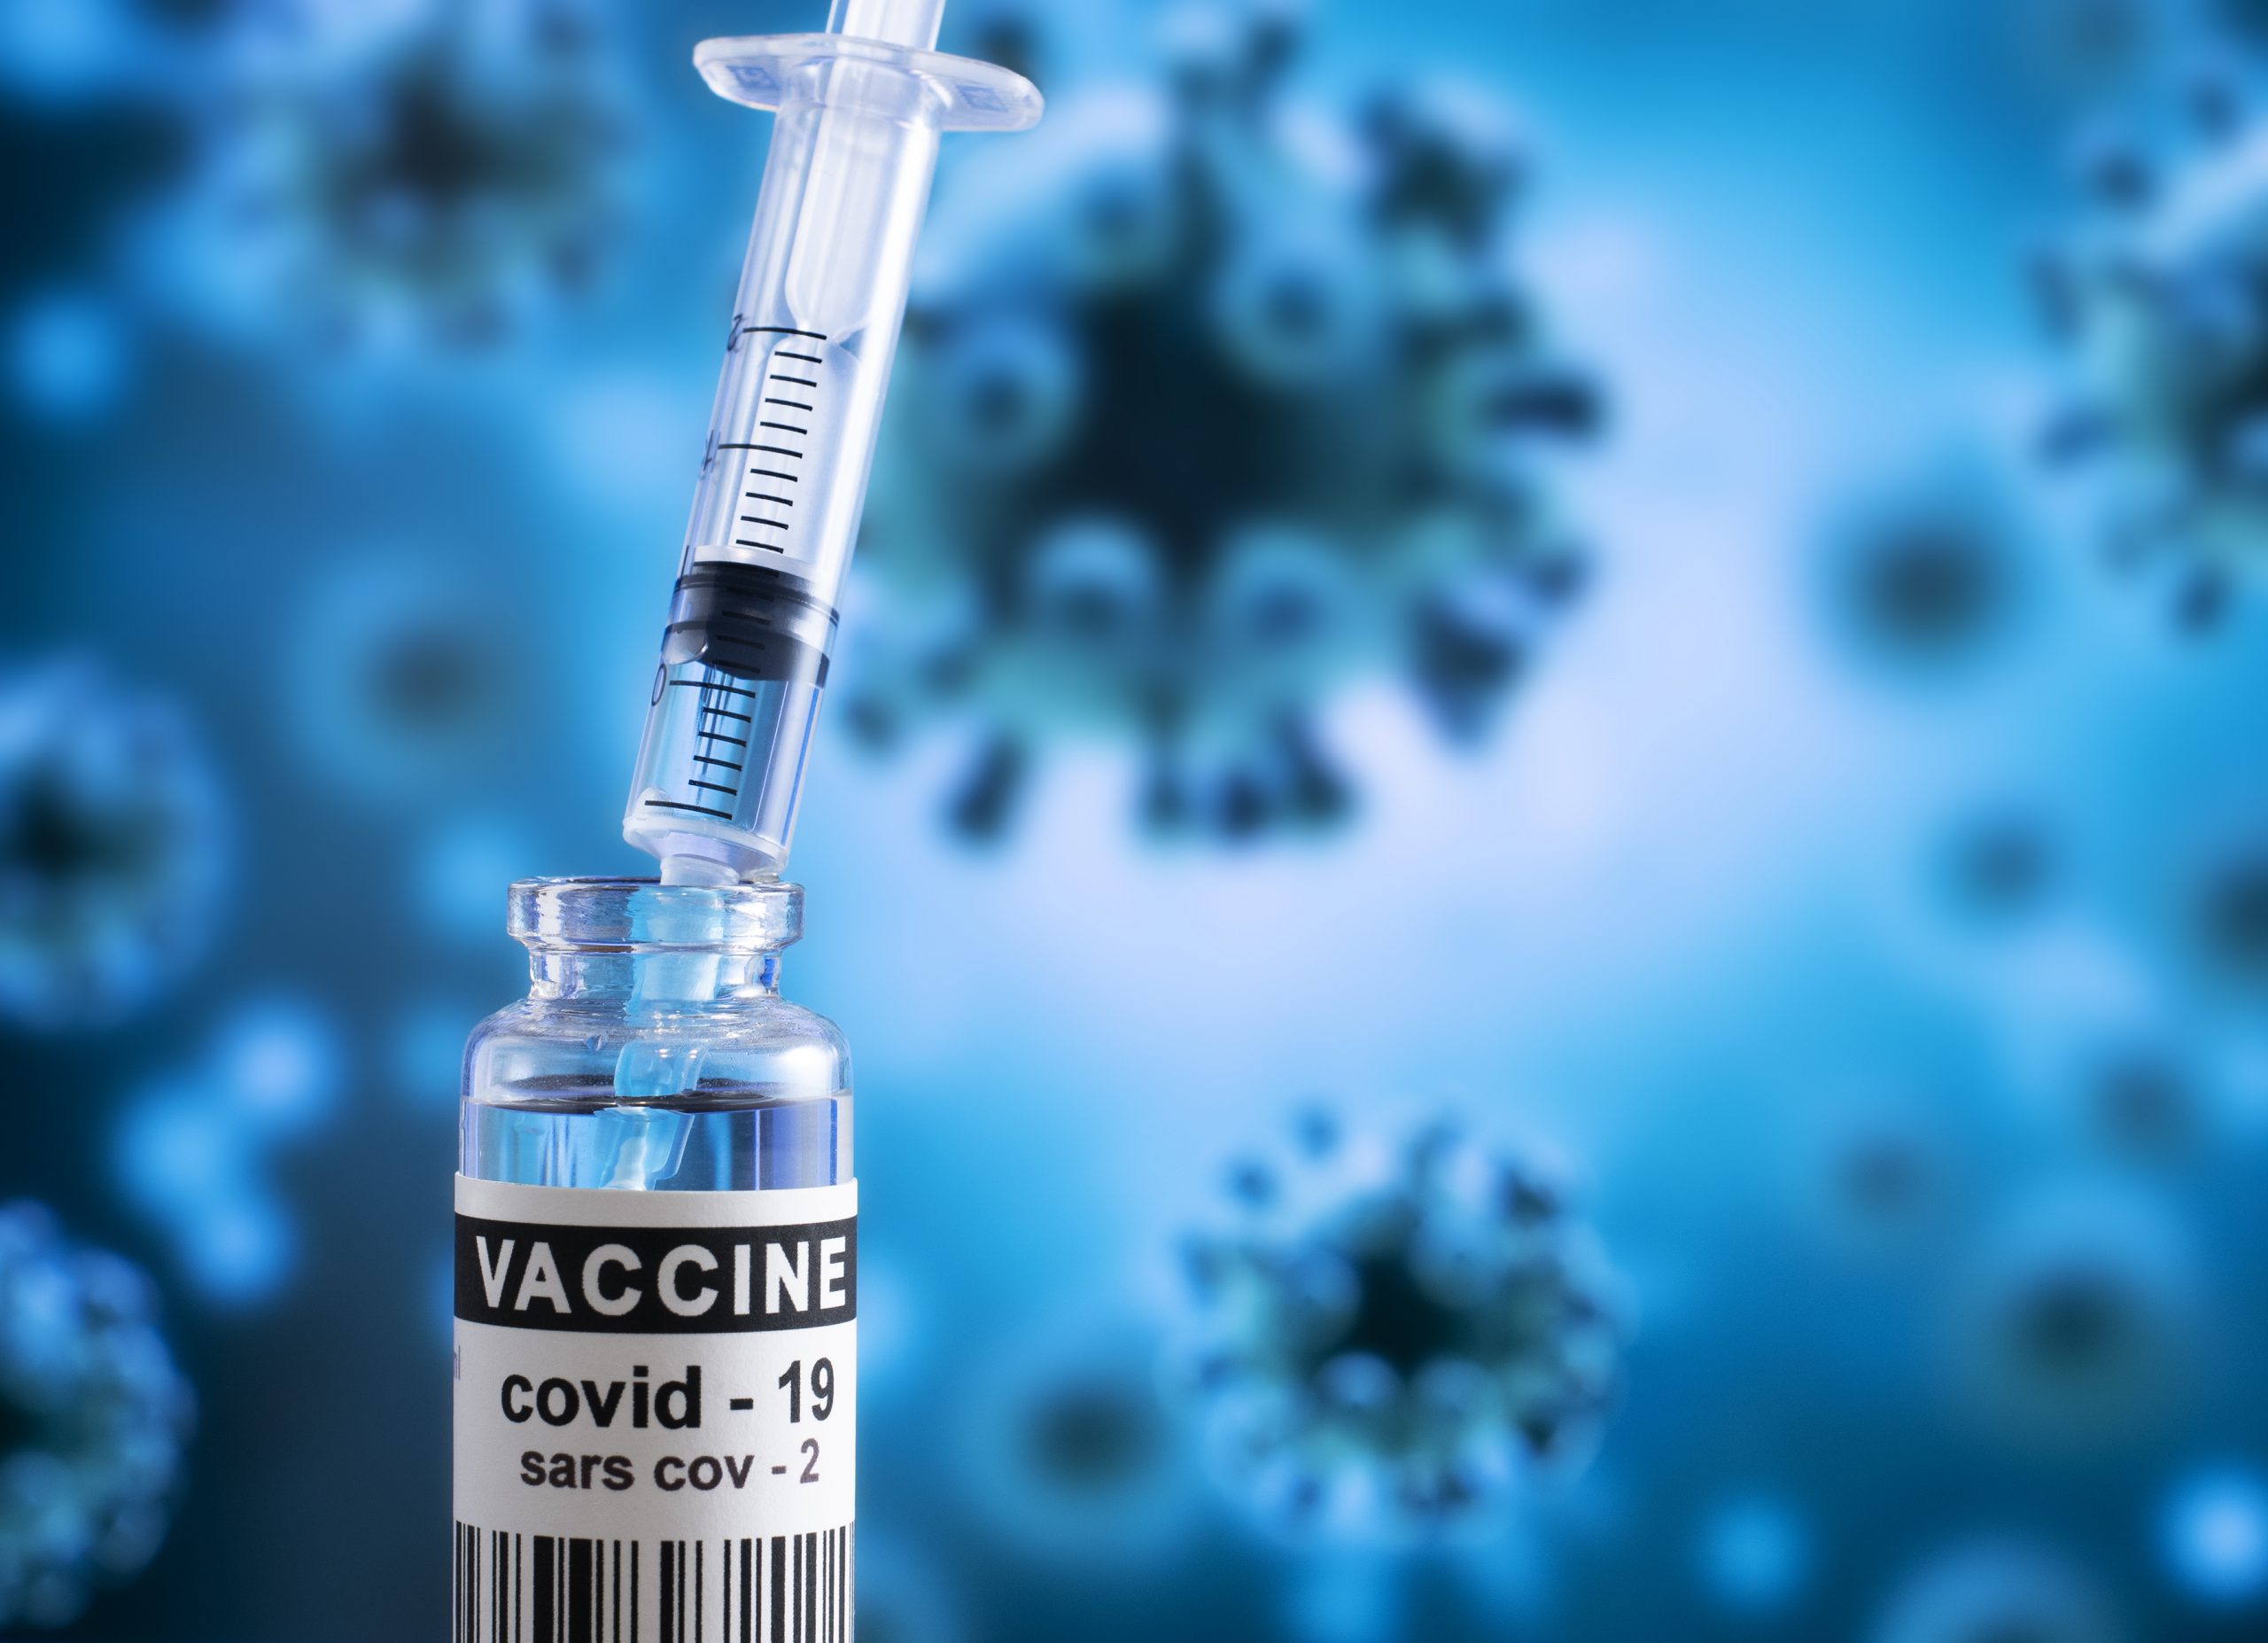 image: COVID 19 vaccine